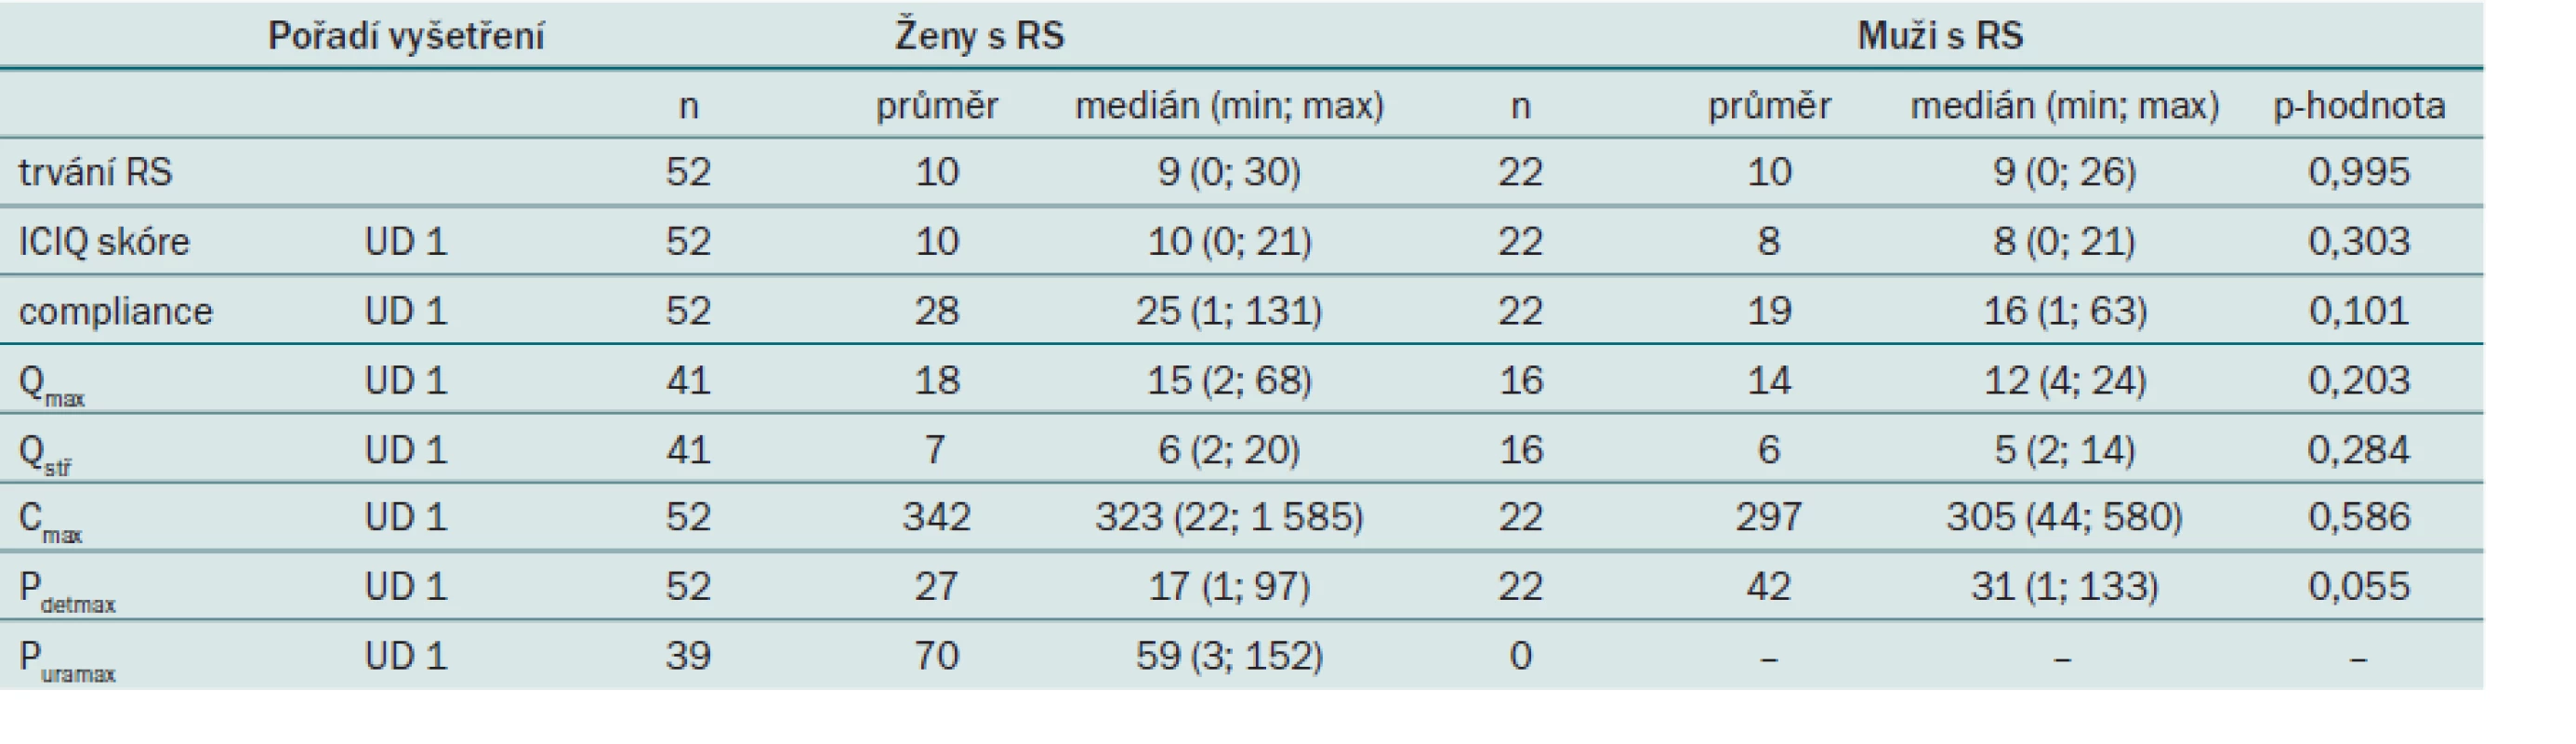 Srovnání spojitých parametrů při vstupním vyšetření v 0. měsíci u pacientů s roztroušenou sklerózou podle pohlaví.